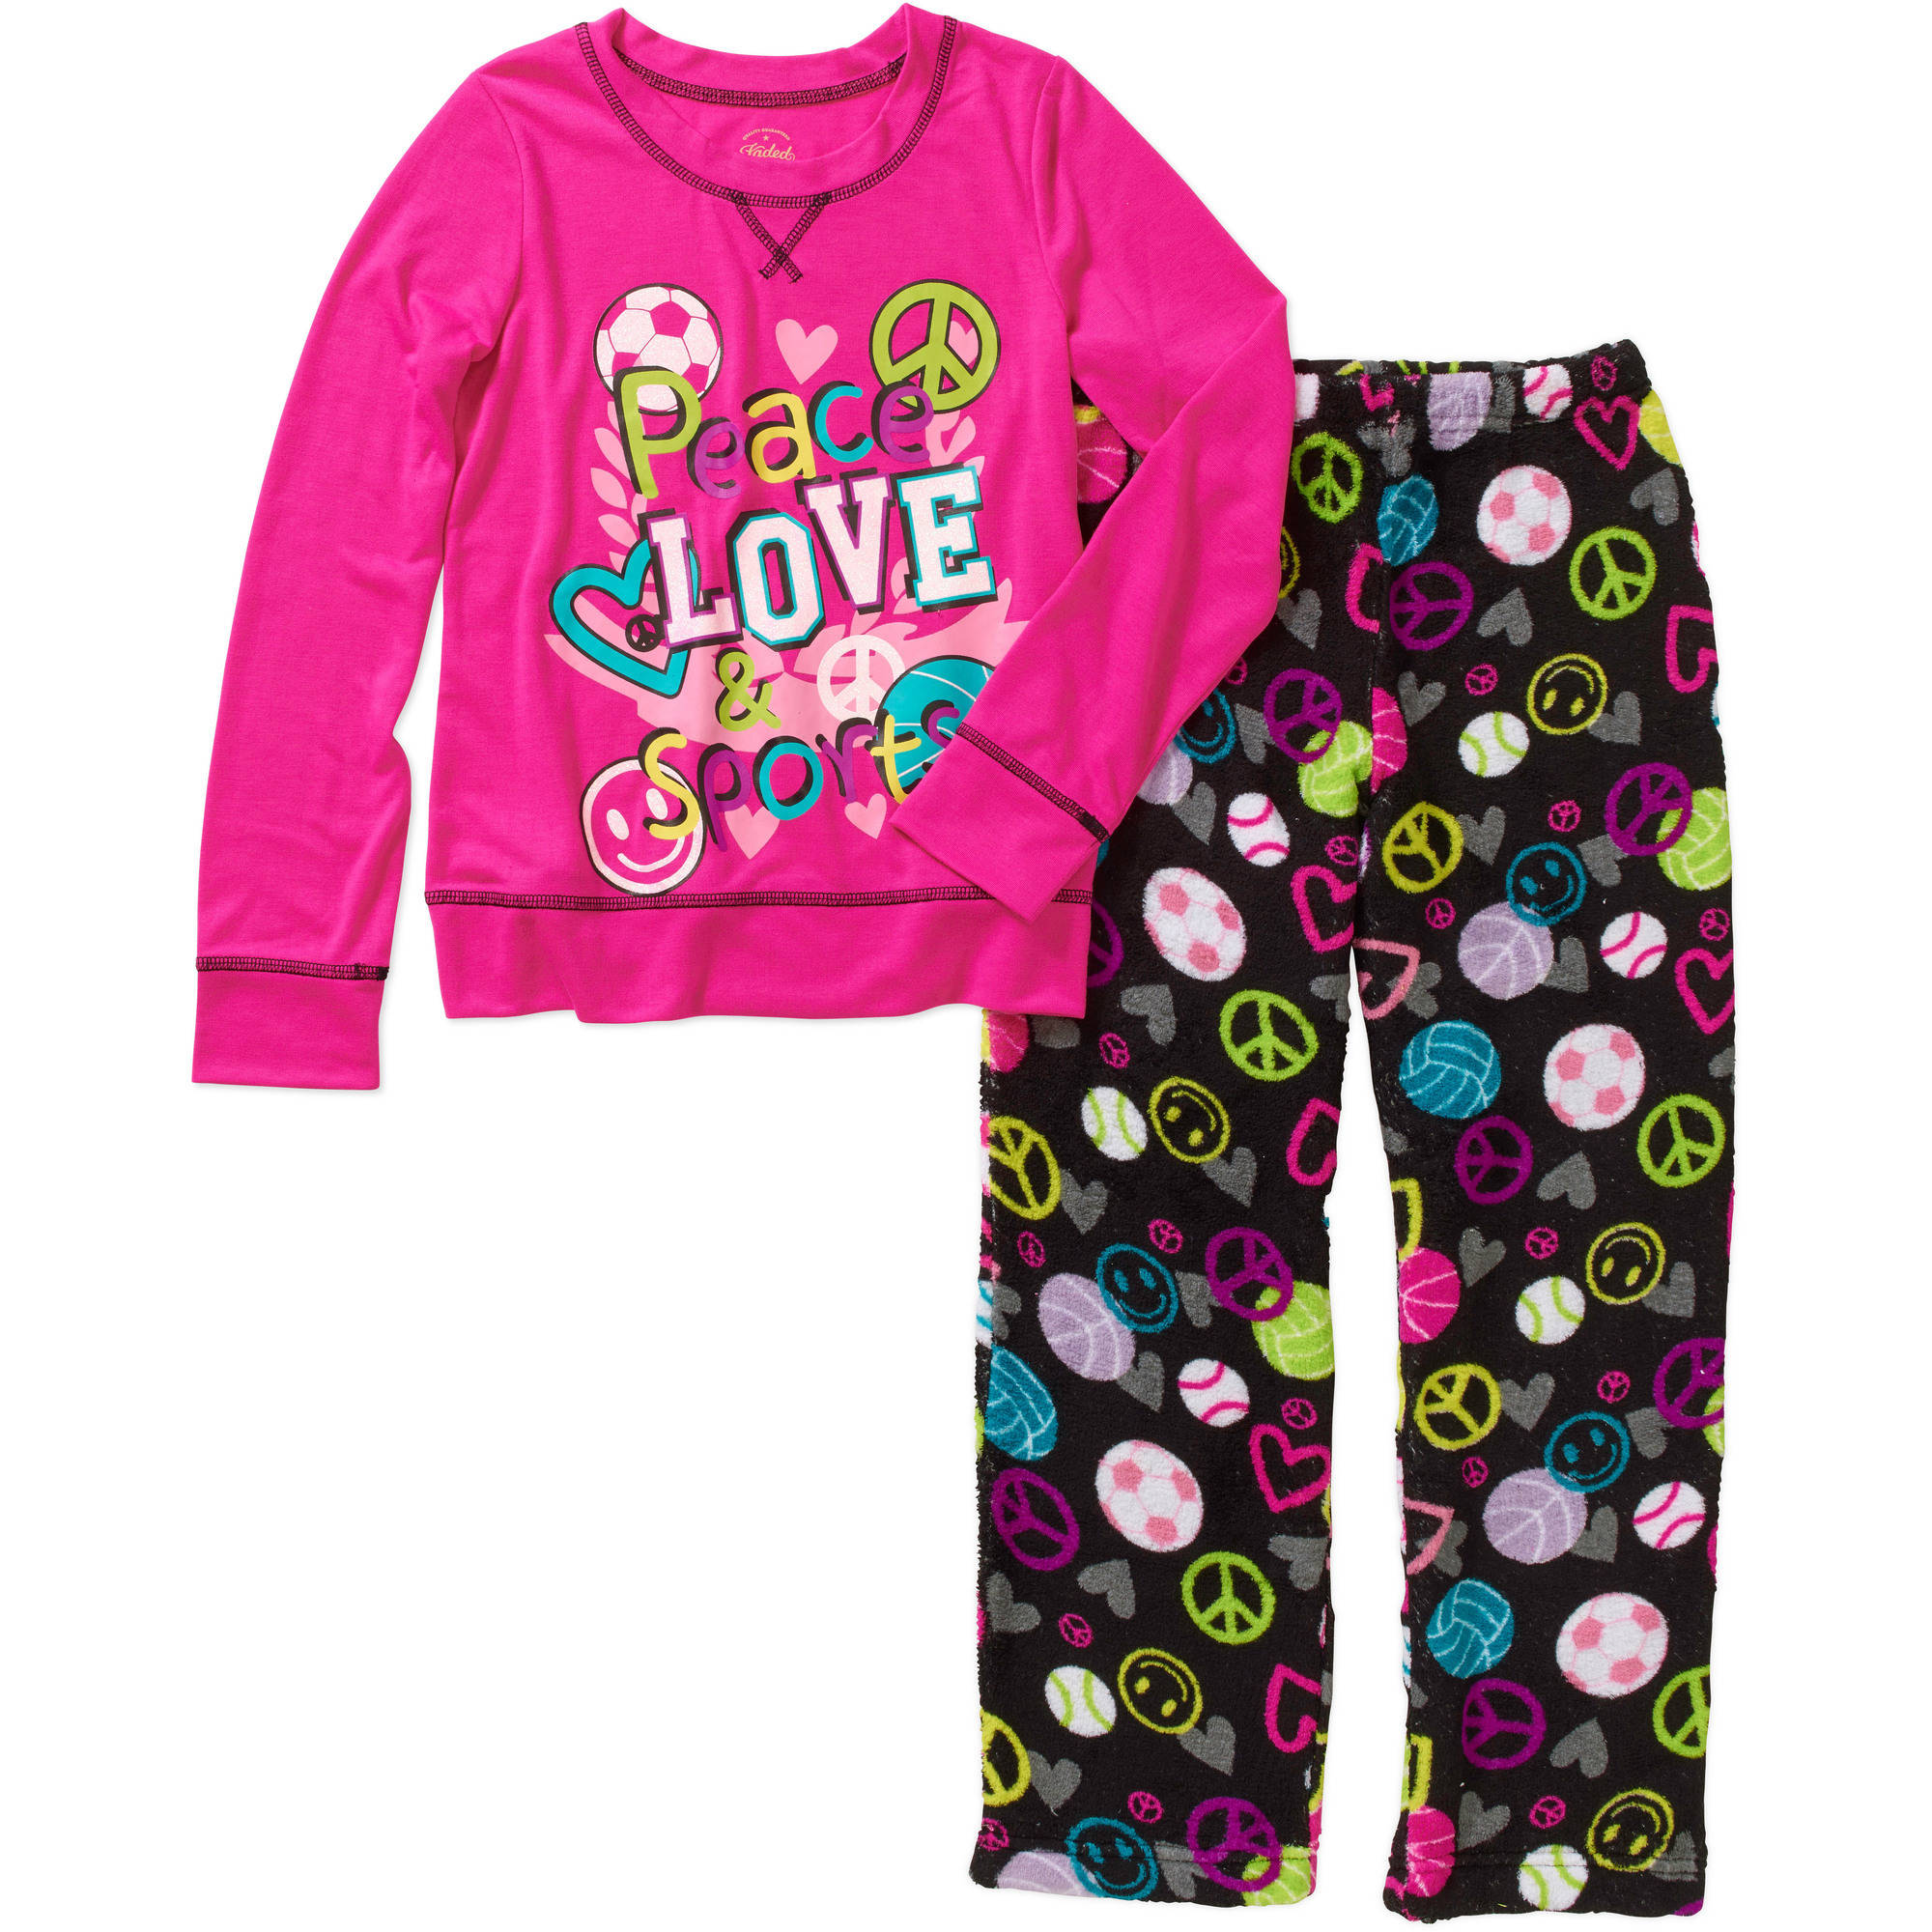 Girls' Long Sleeve Sleepshirt and Fleece Sleep Pant Sleepwear Set - image 1 of 1